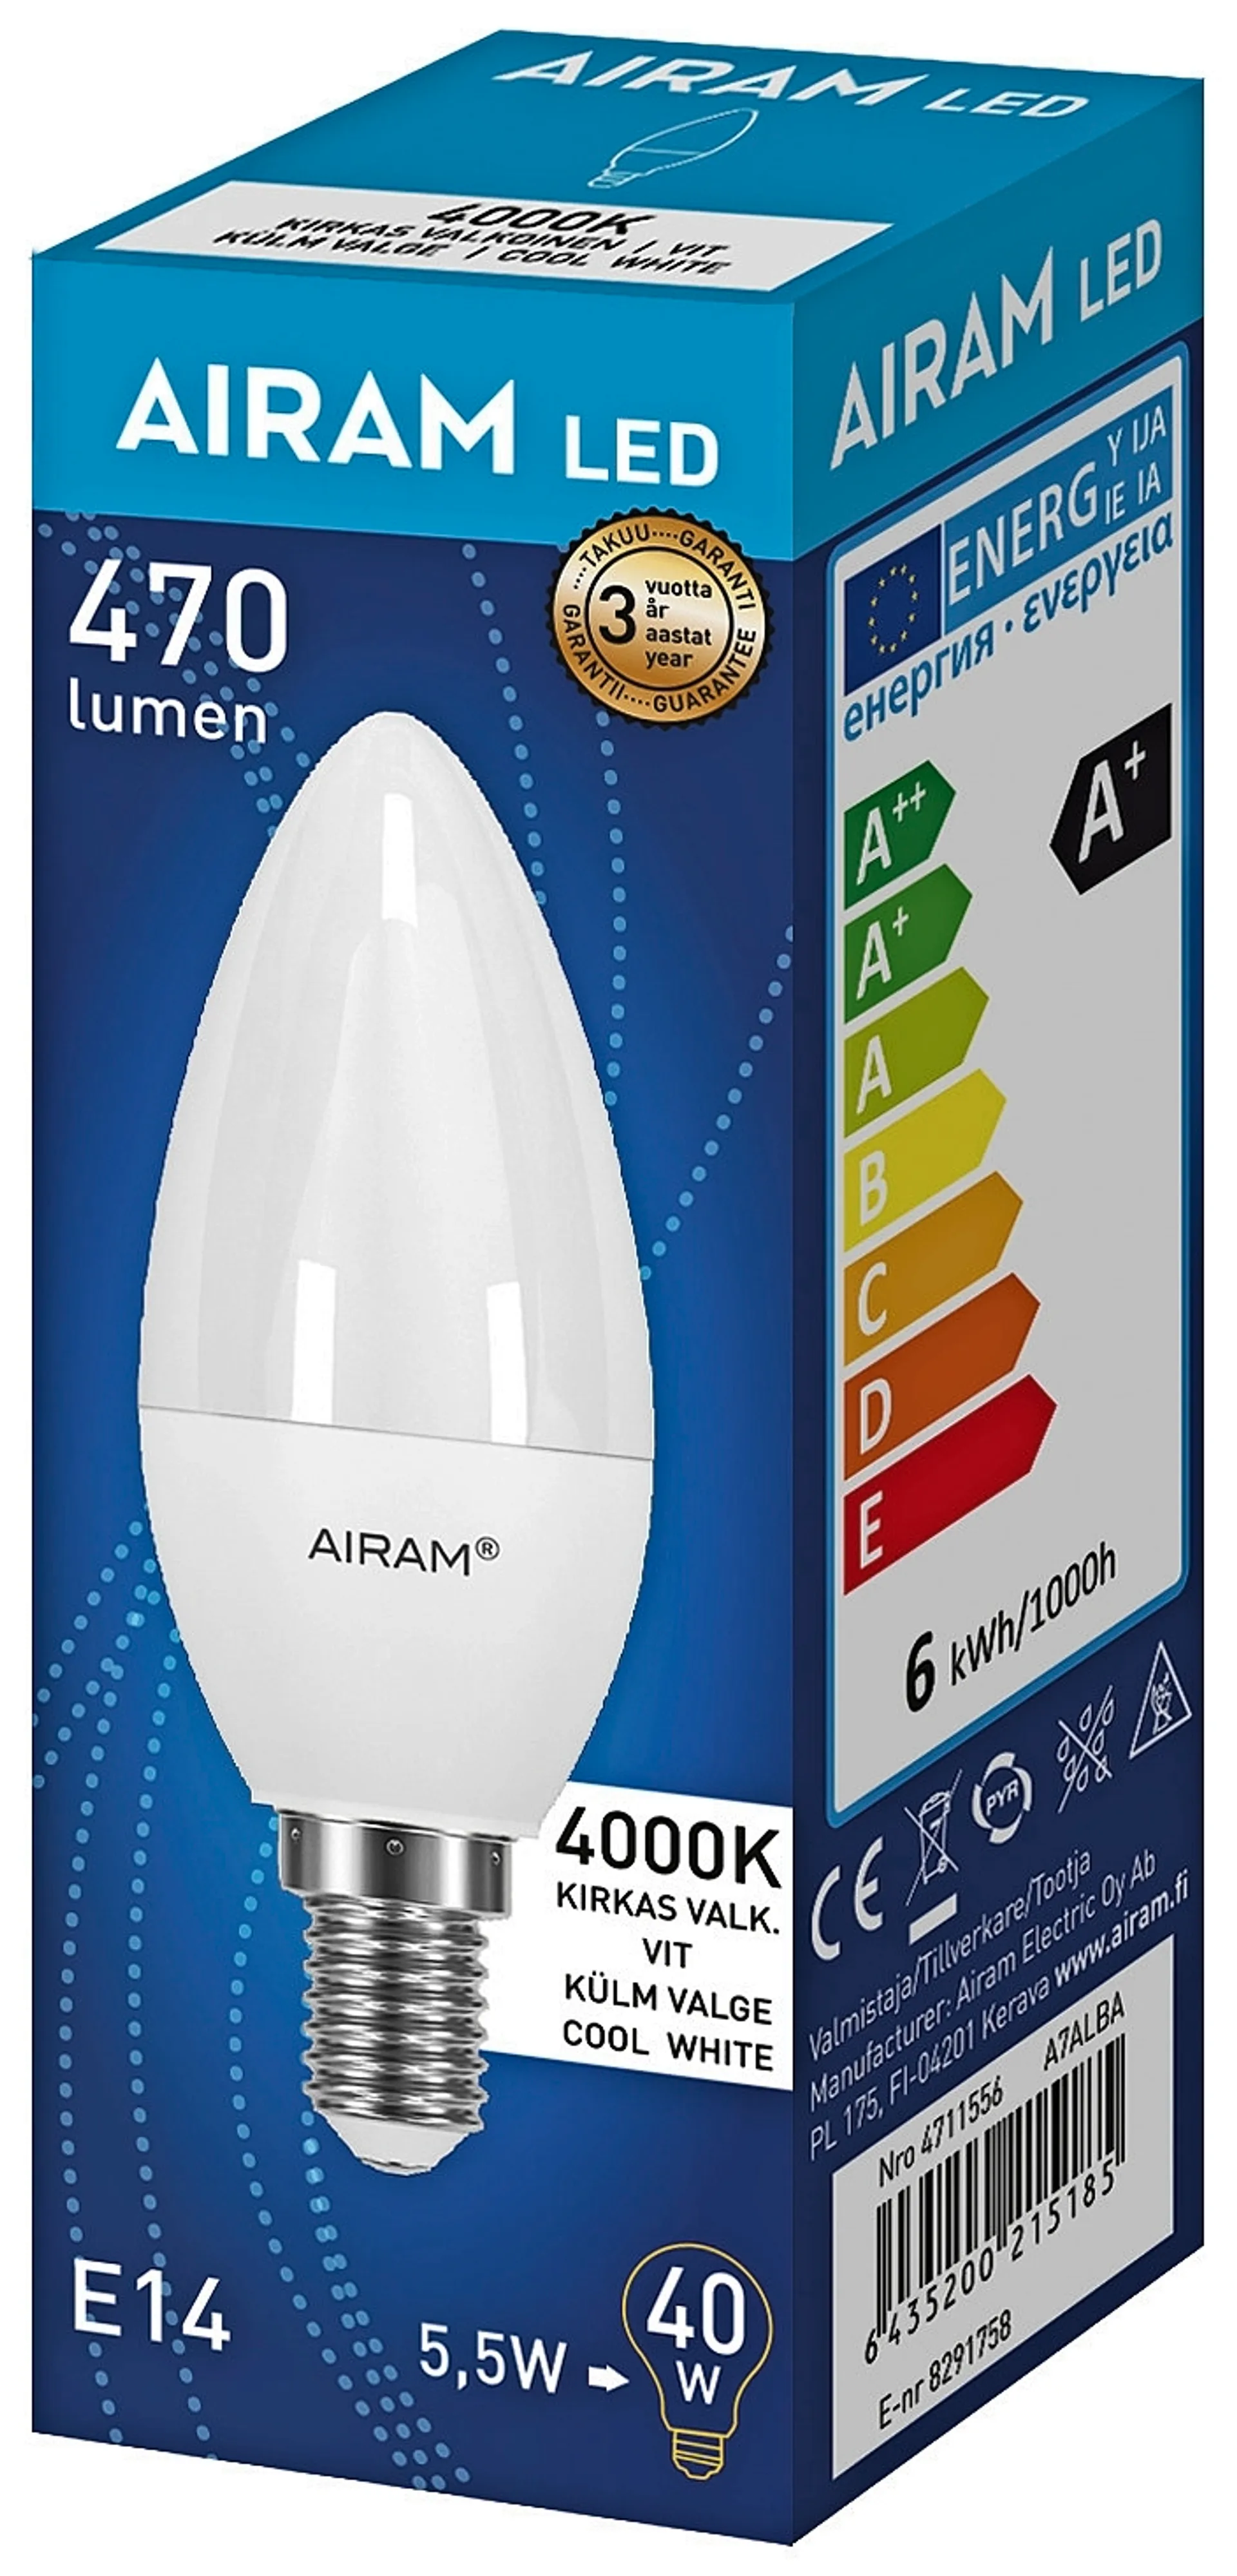 Airam LED 4,9W/840 E14 kynttilä 500lm - 2